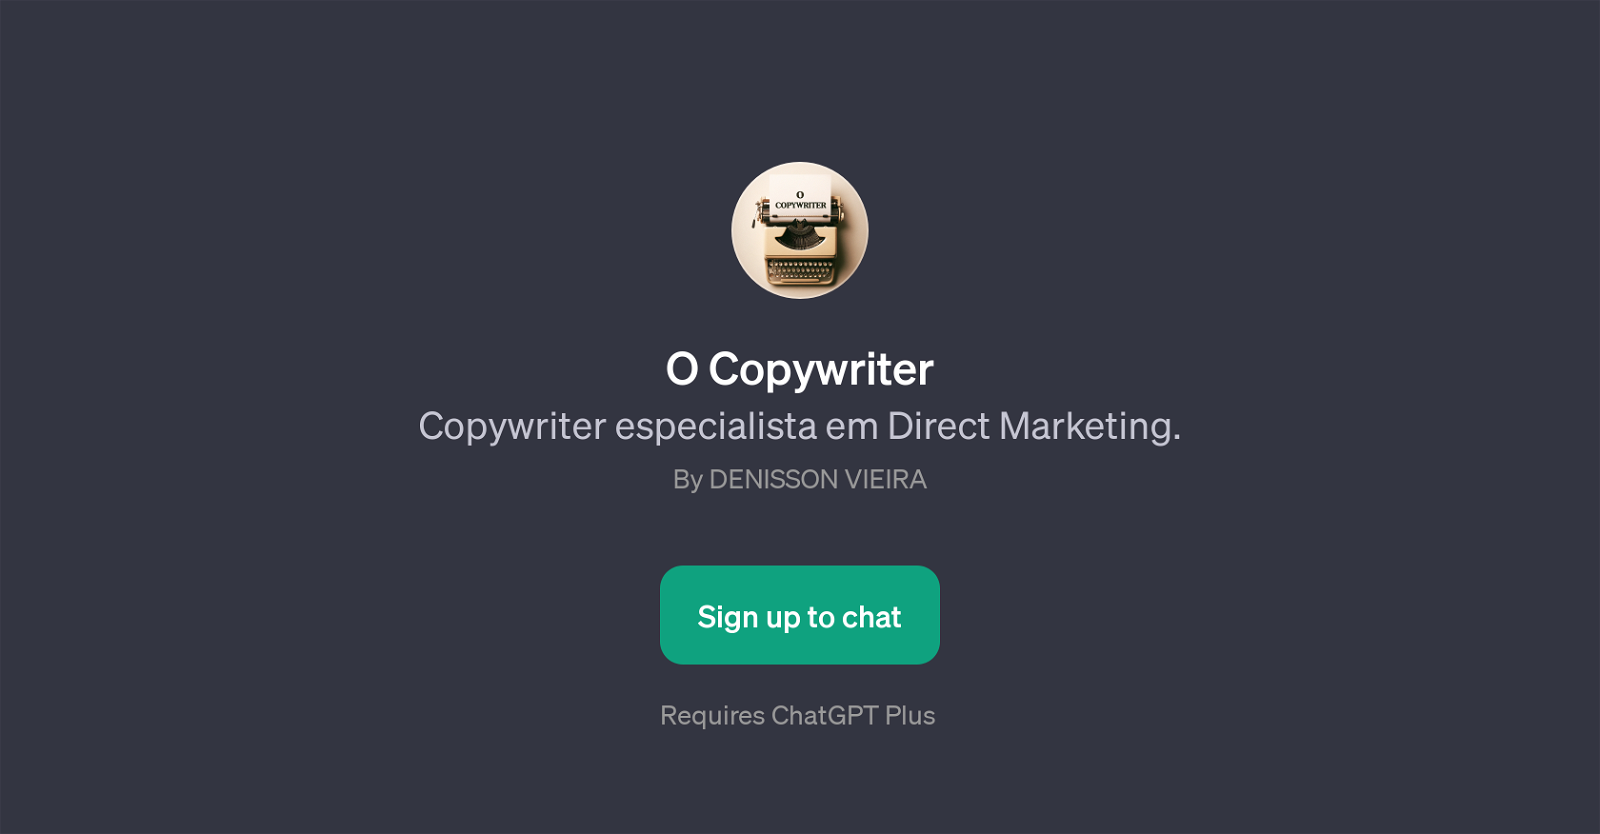 O Copywriter website